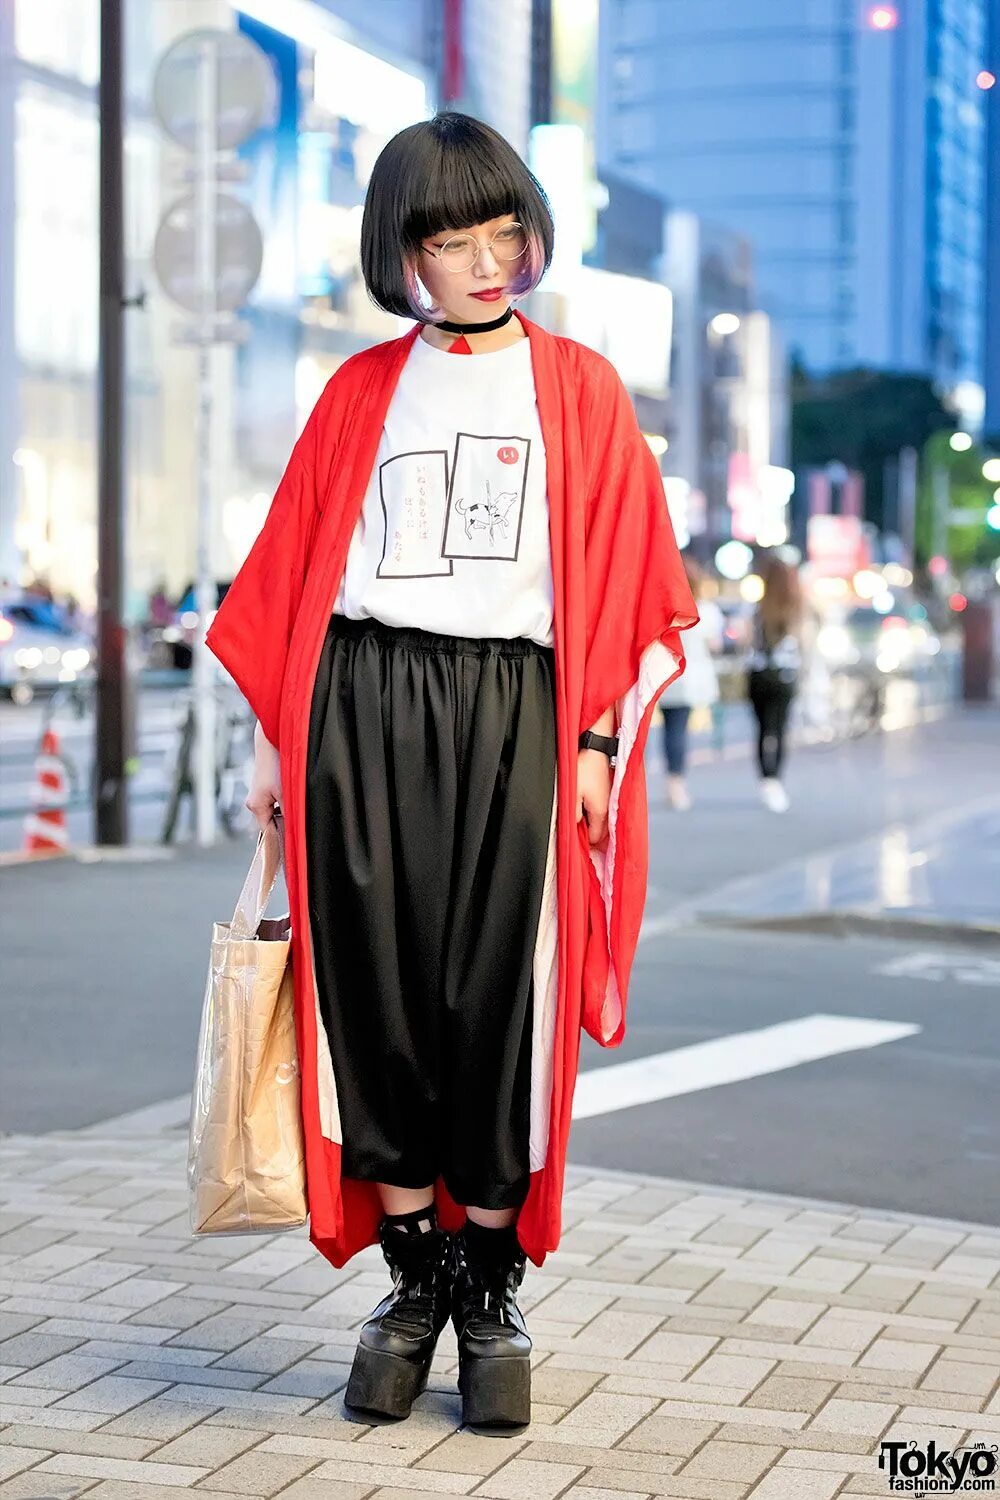 Токийские одежда. Хараджуку Токио стиль одежды. Харадзюку Токио одежда. Харадзюку стиль 2020. Токийская мода Харадзюку.